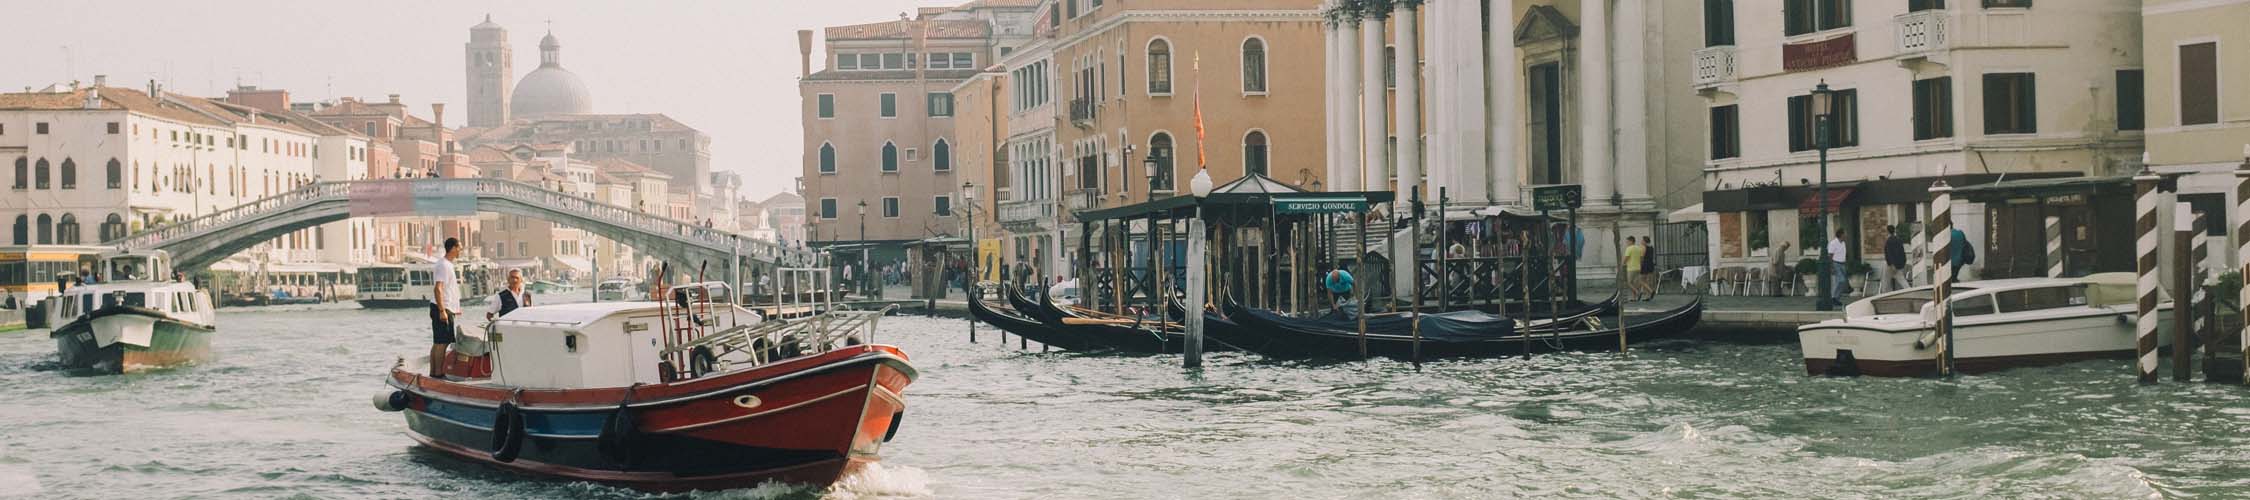 Boote im Kanal von Venedigt, Italien